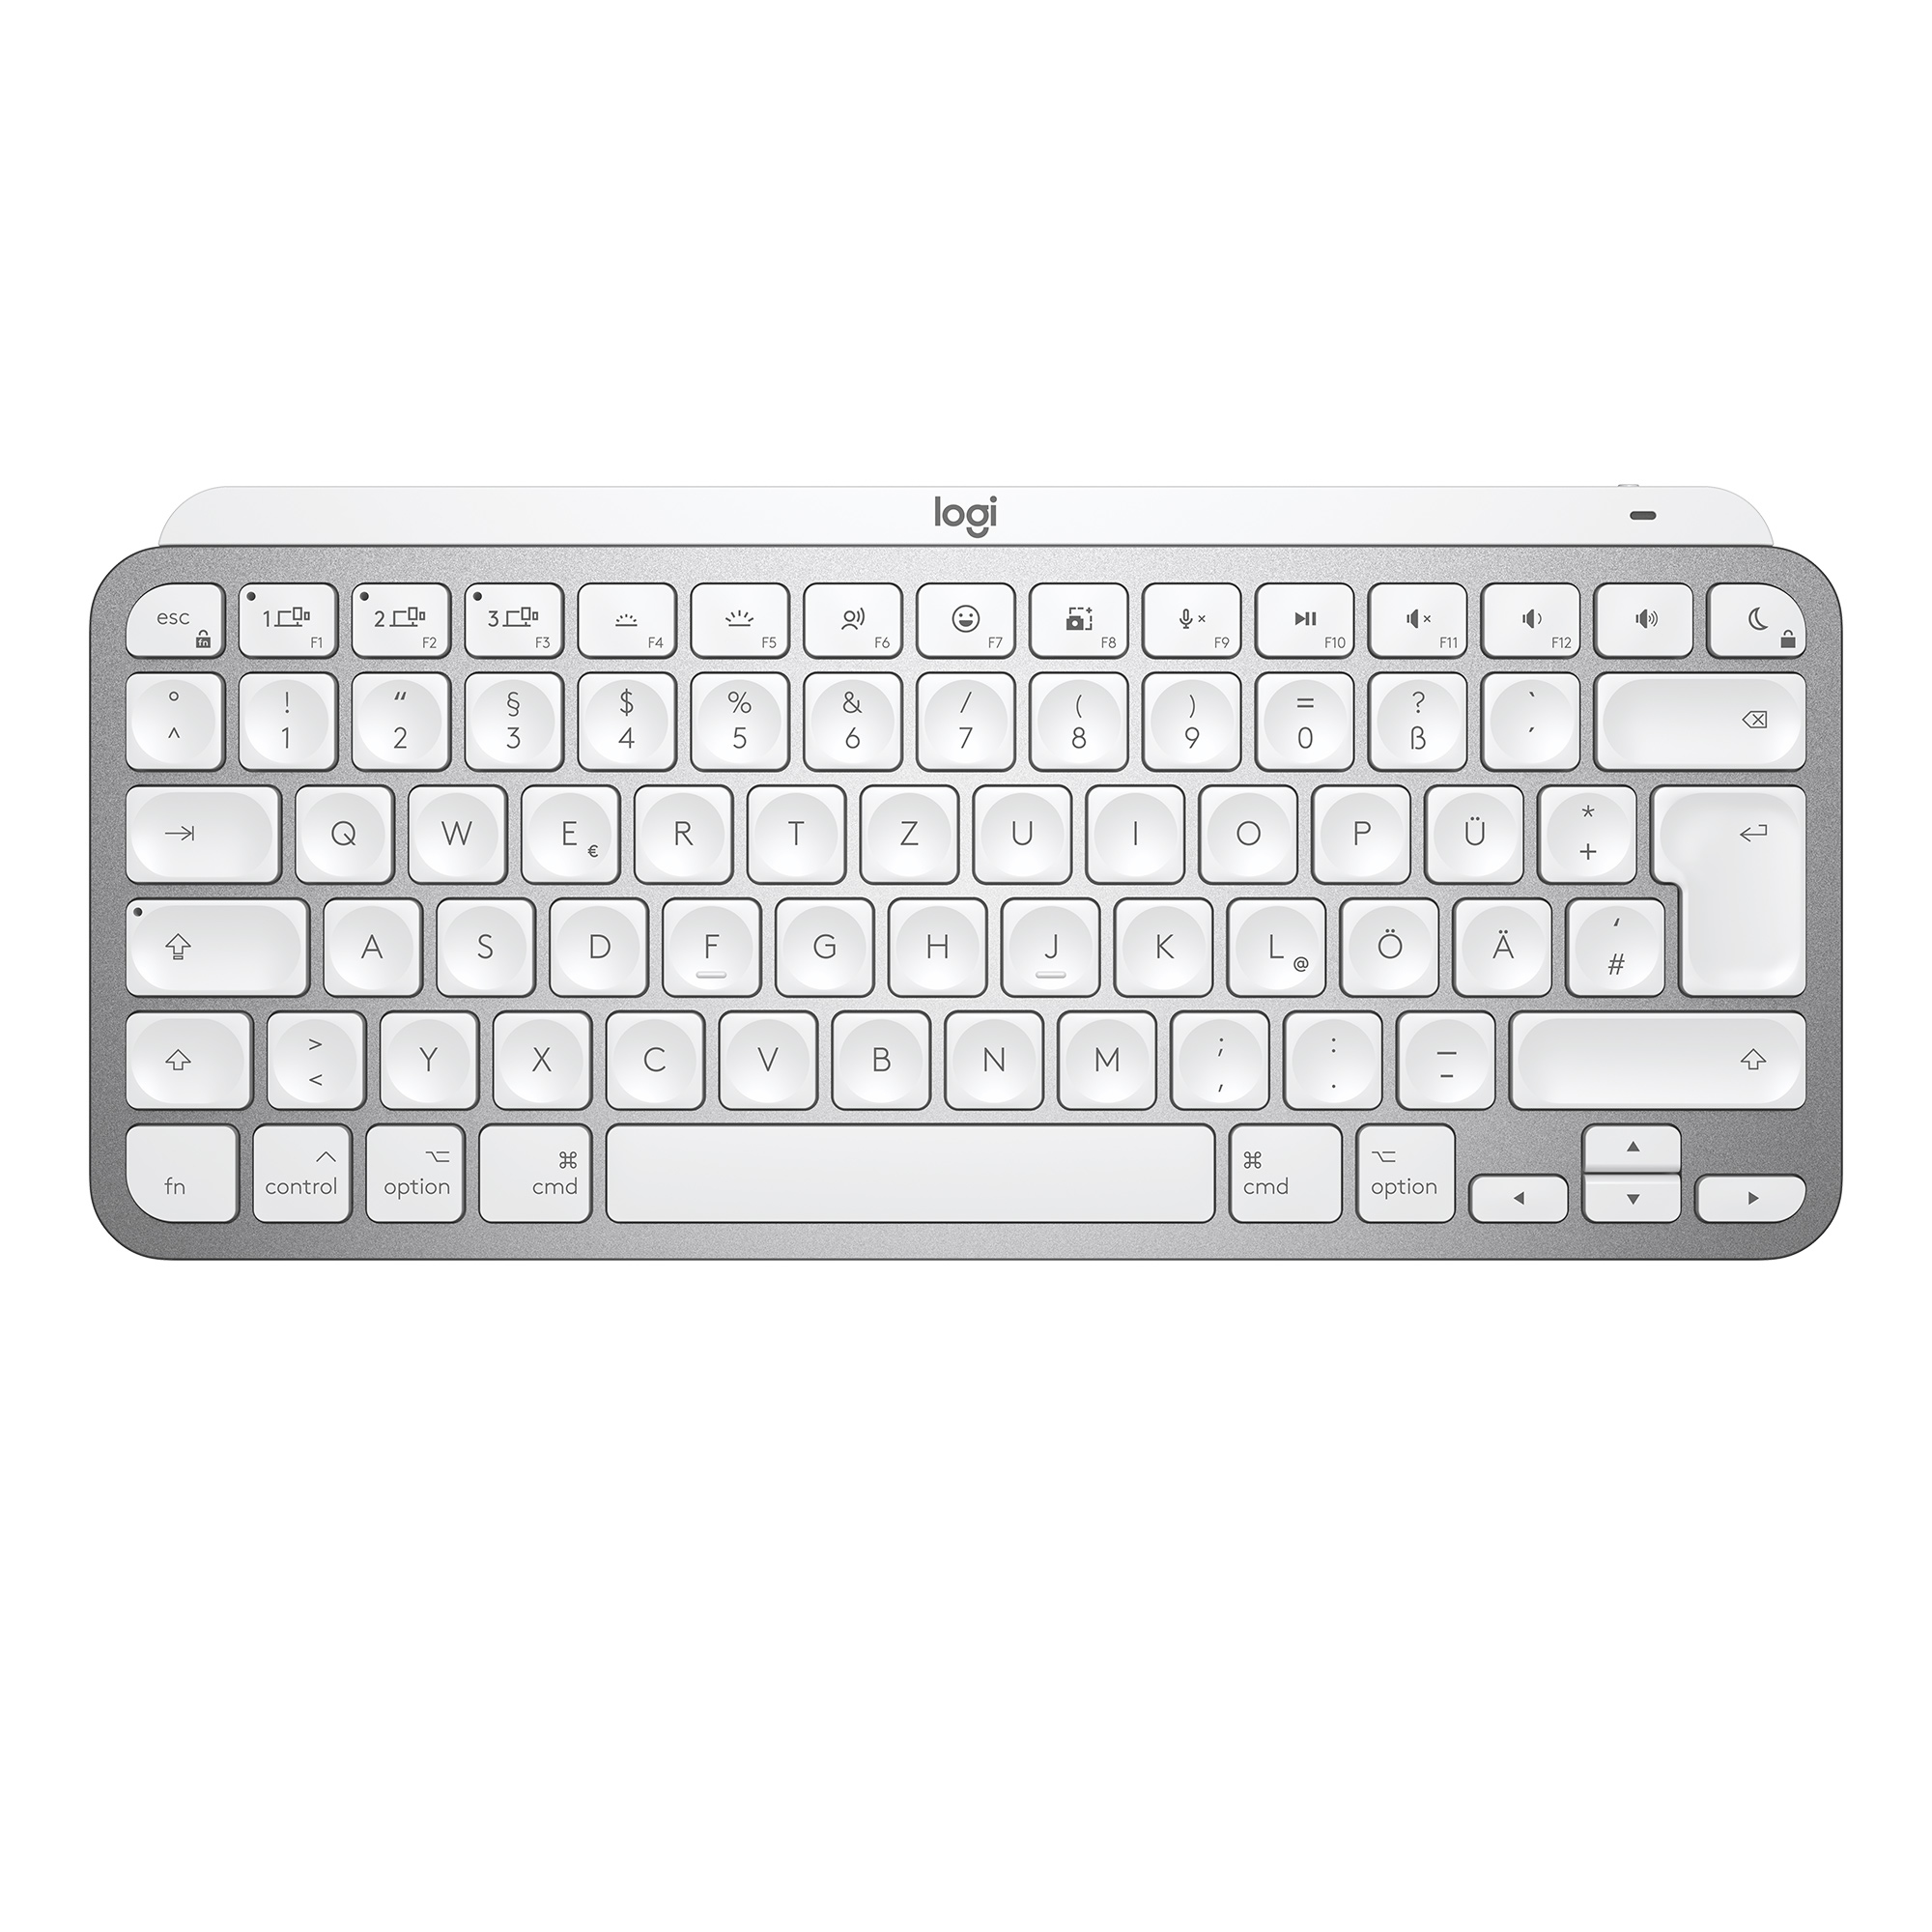 MX Keys Mini For Mac Minimalist Wireless Illuminated Keyboard - PALE GREY - CH - CENTRAL QWERTZ